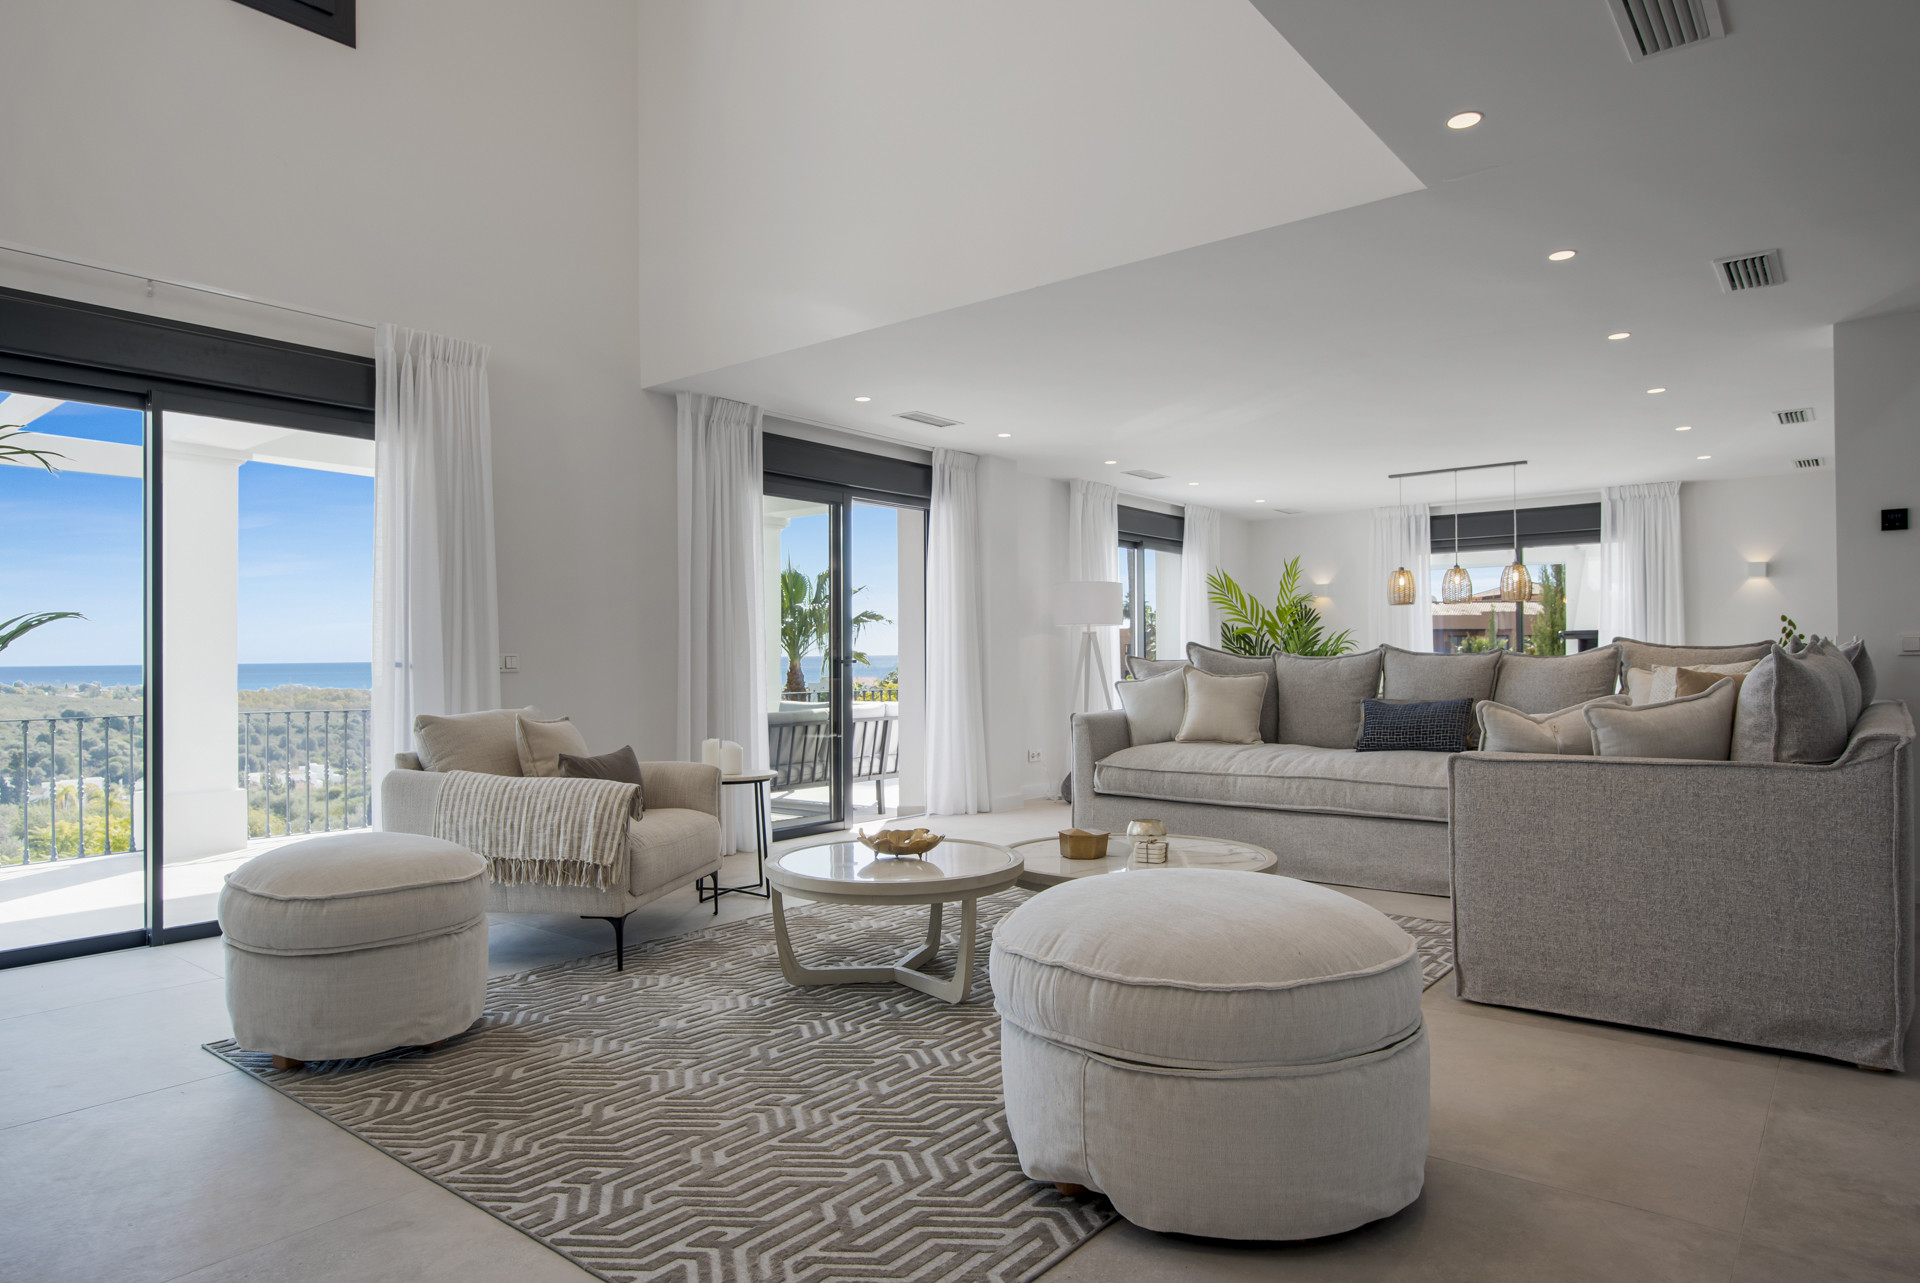 Villa completamente reformada en Los Flamingos Golf Resort distribuida en tres niveles y con impresionantes vistas panorámicas al mar